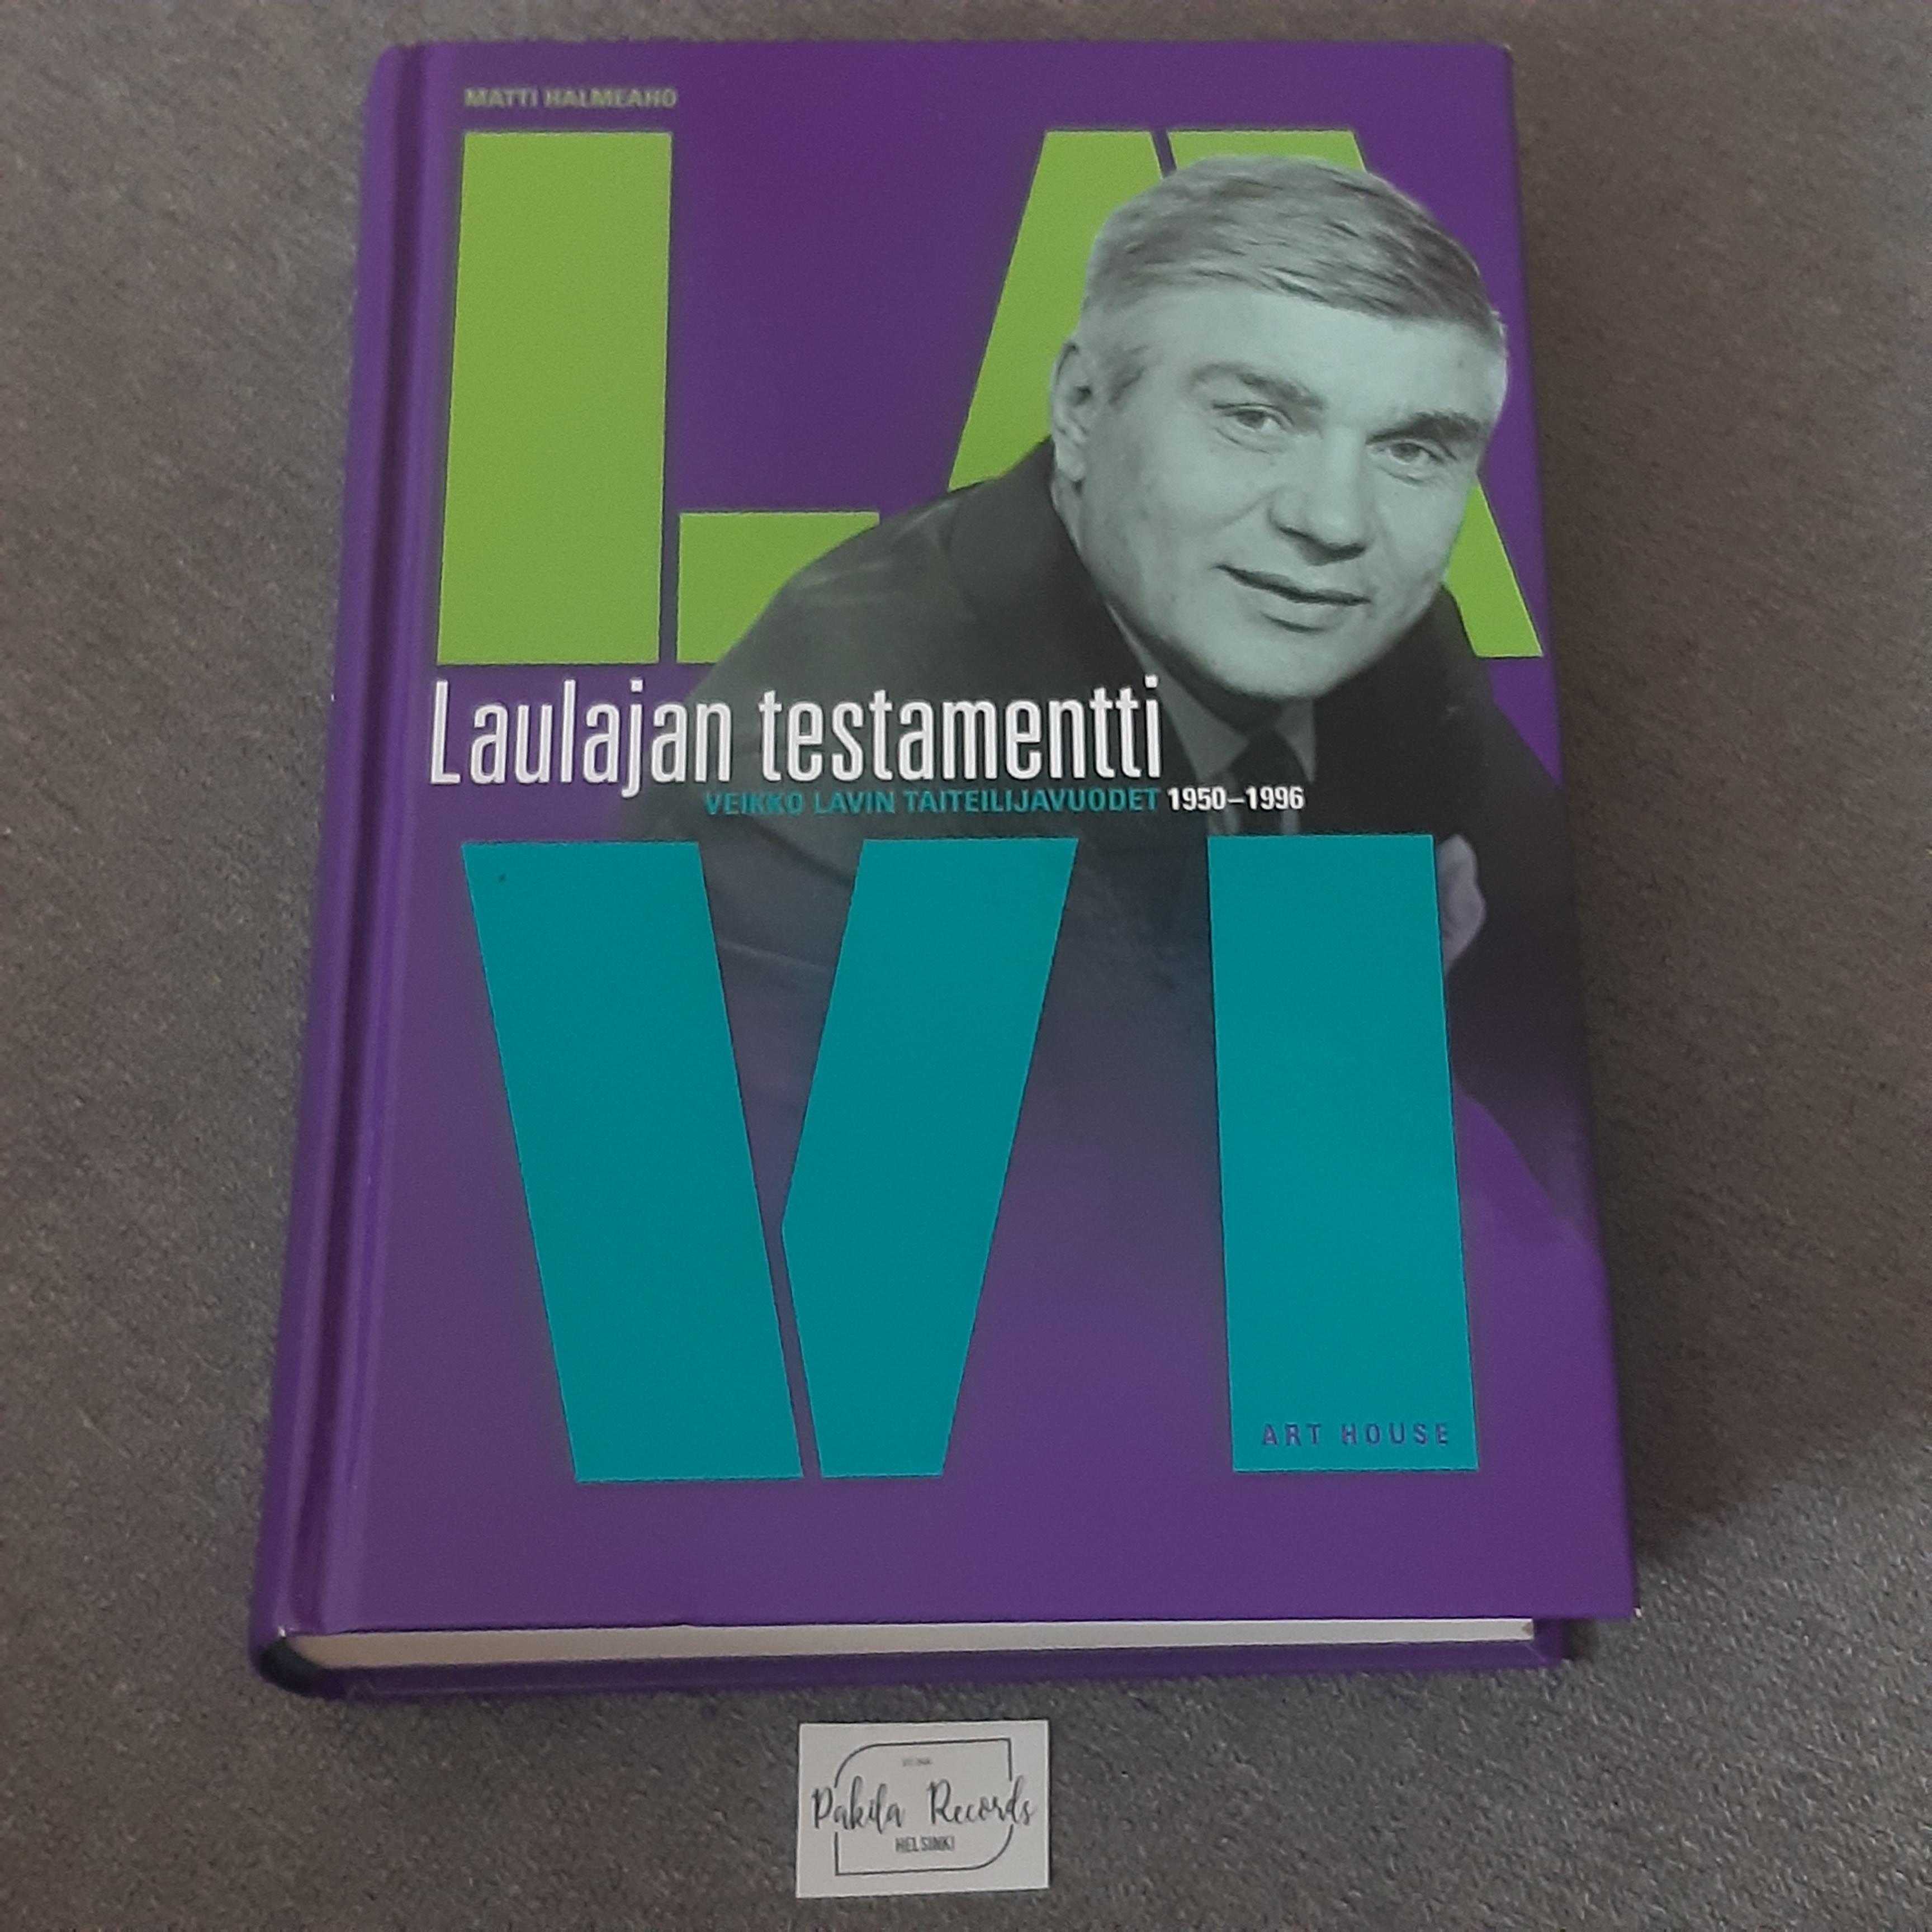 Laulajan testamentti, Veikko Lavin taiteilijavuodet 1950-1996 - Matti Halmeaho - Kirja (käytetty)